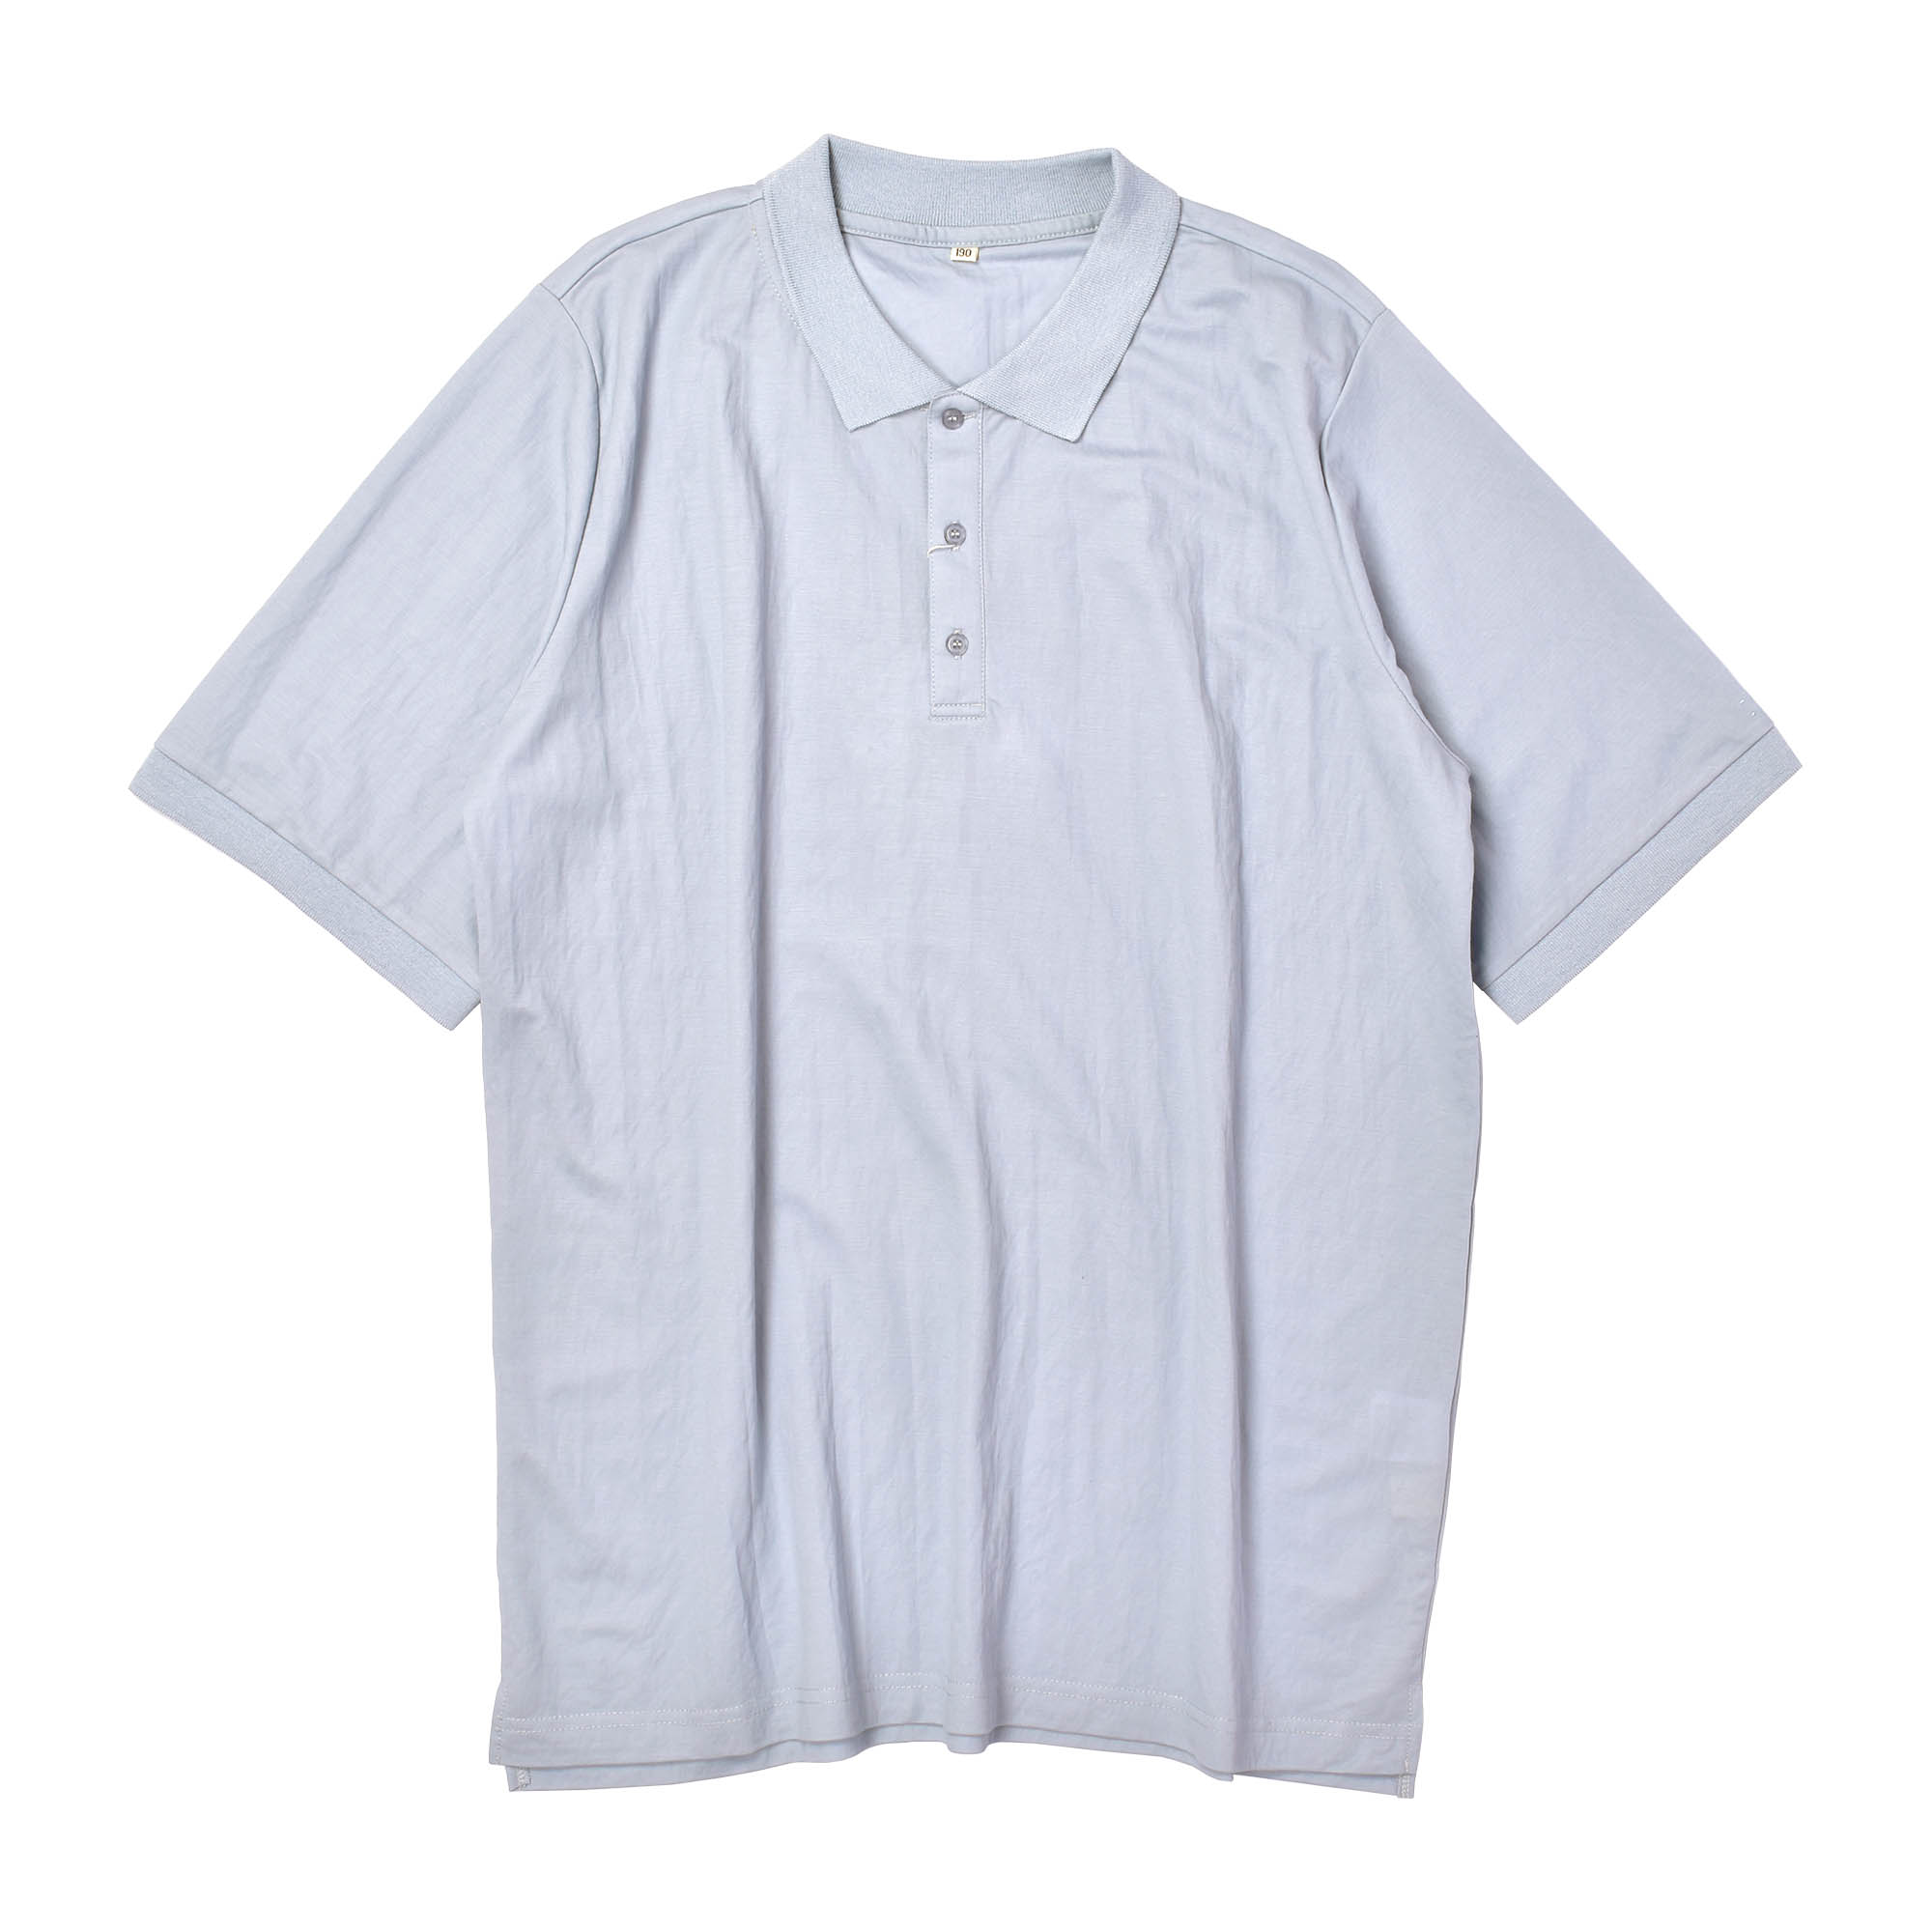 ポロシャツ メンズ レディース OIC-0039 強はっ水 撥水 カーキ ネイビー 紺 半袖 ポロ ...